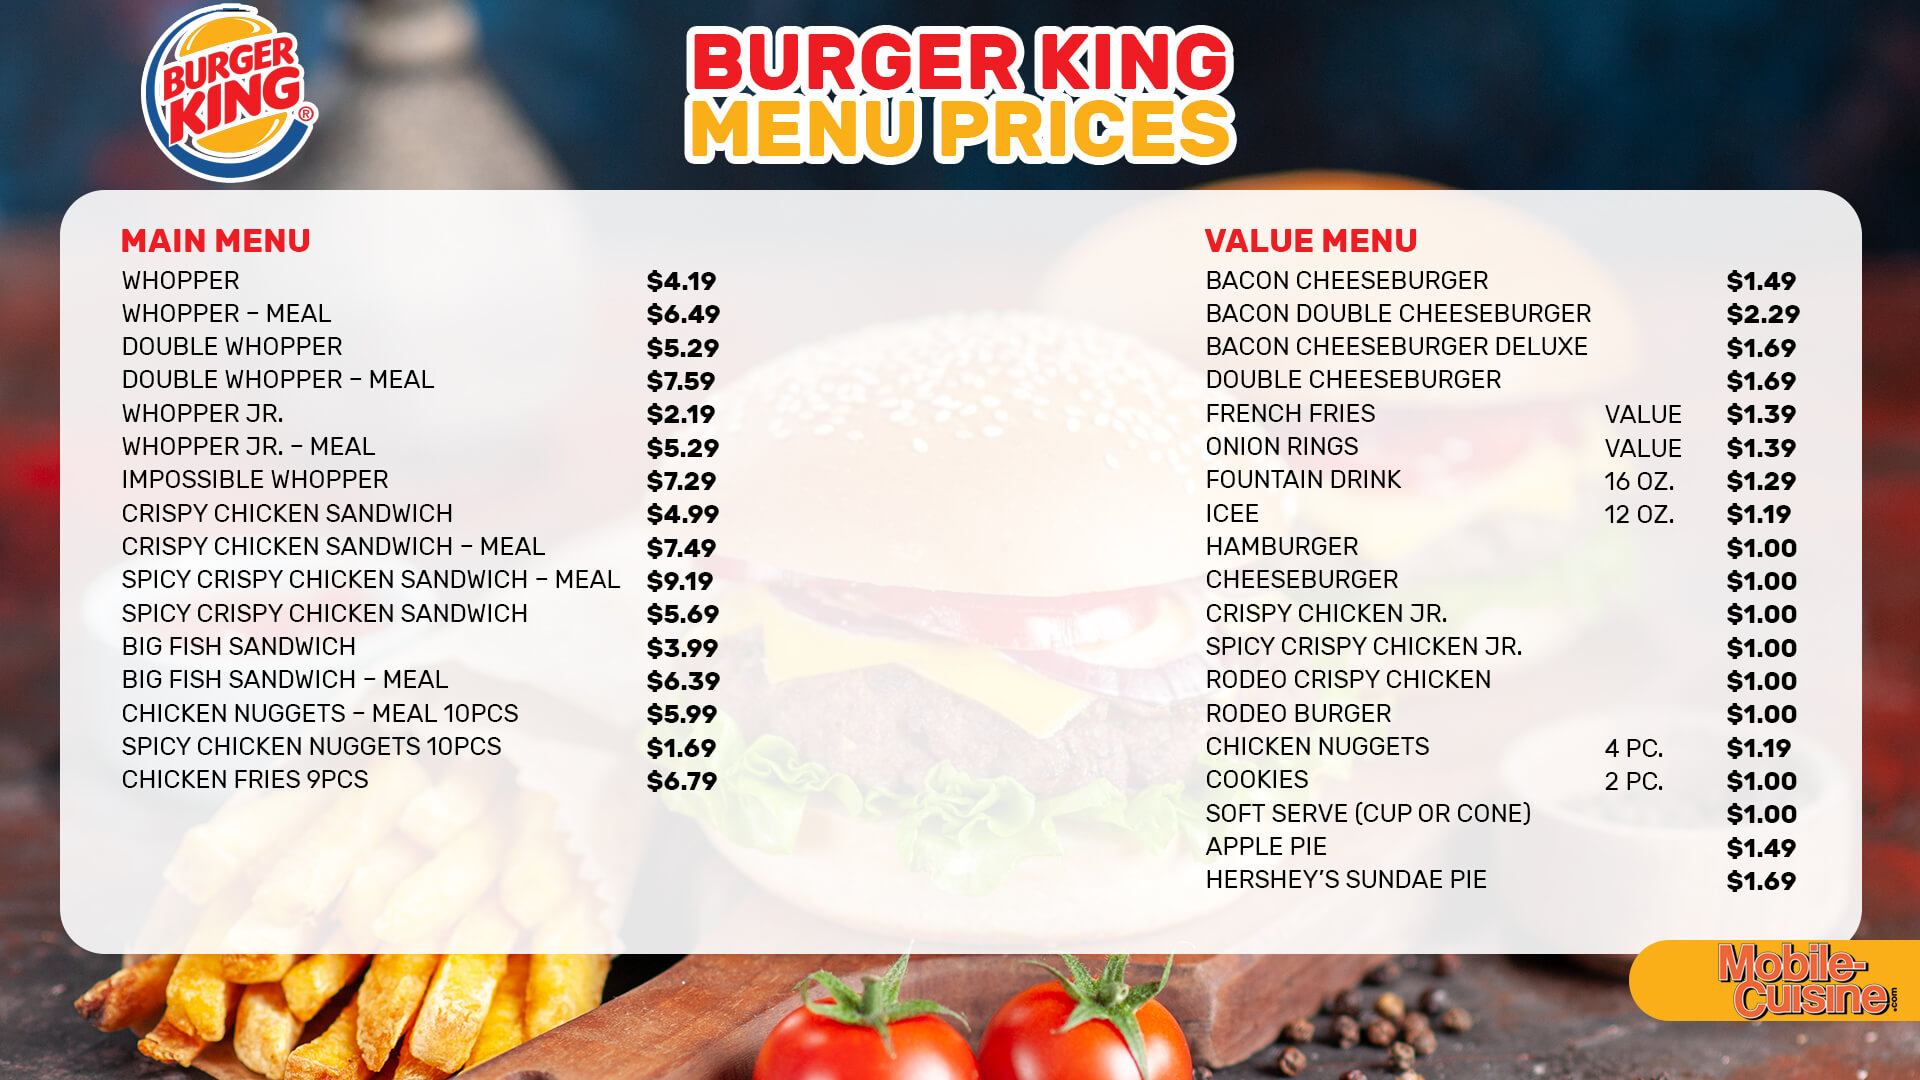 Burger King menu prices